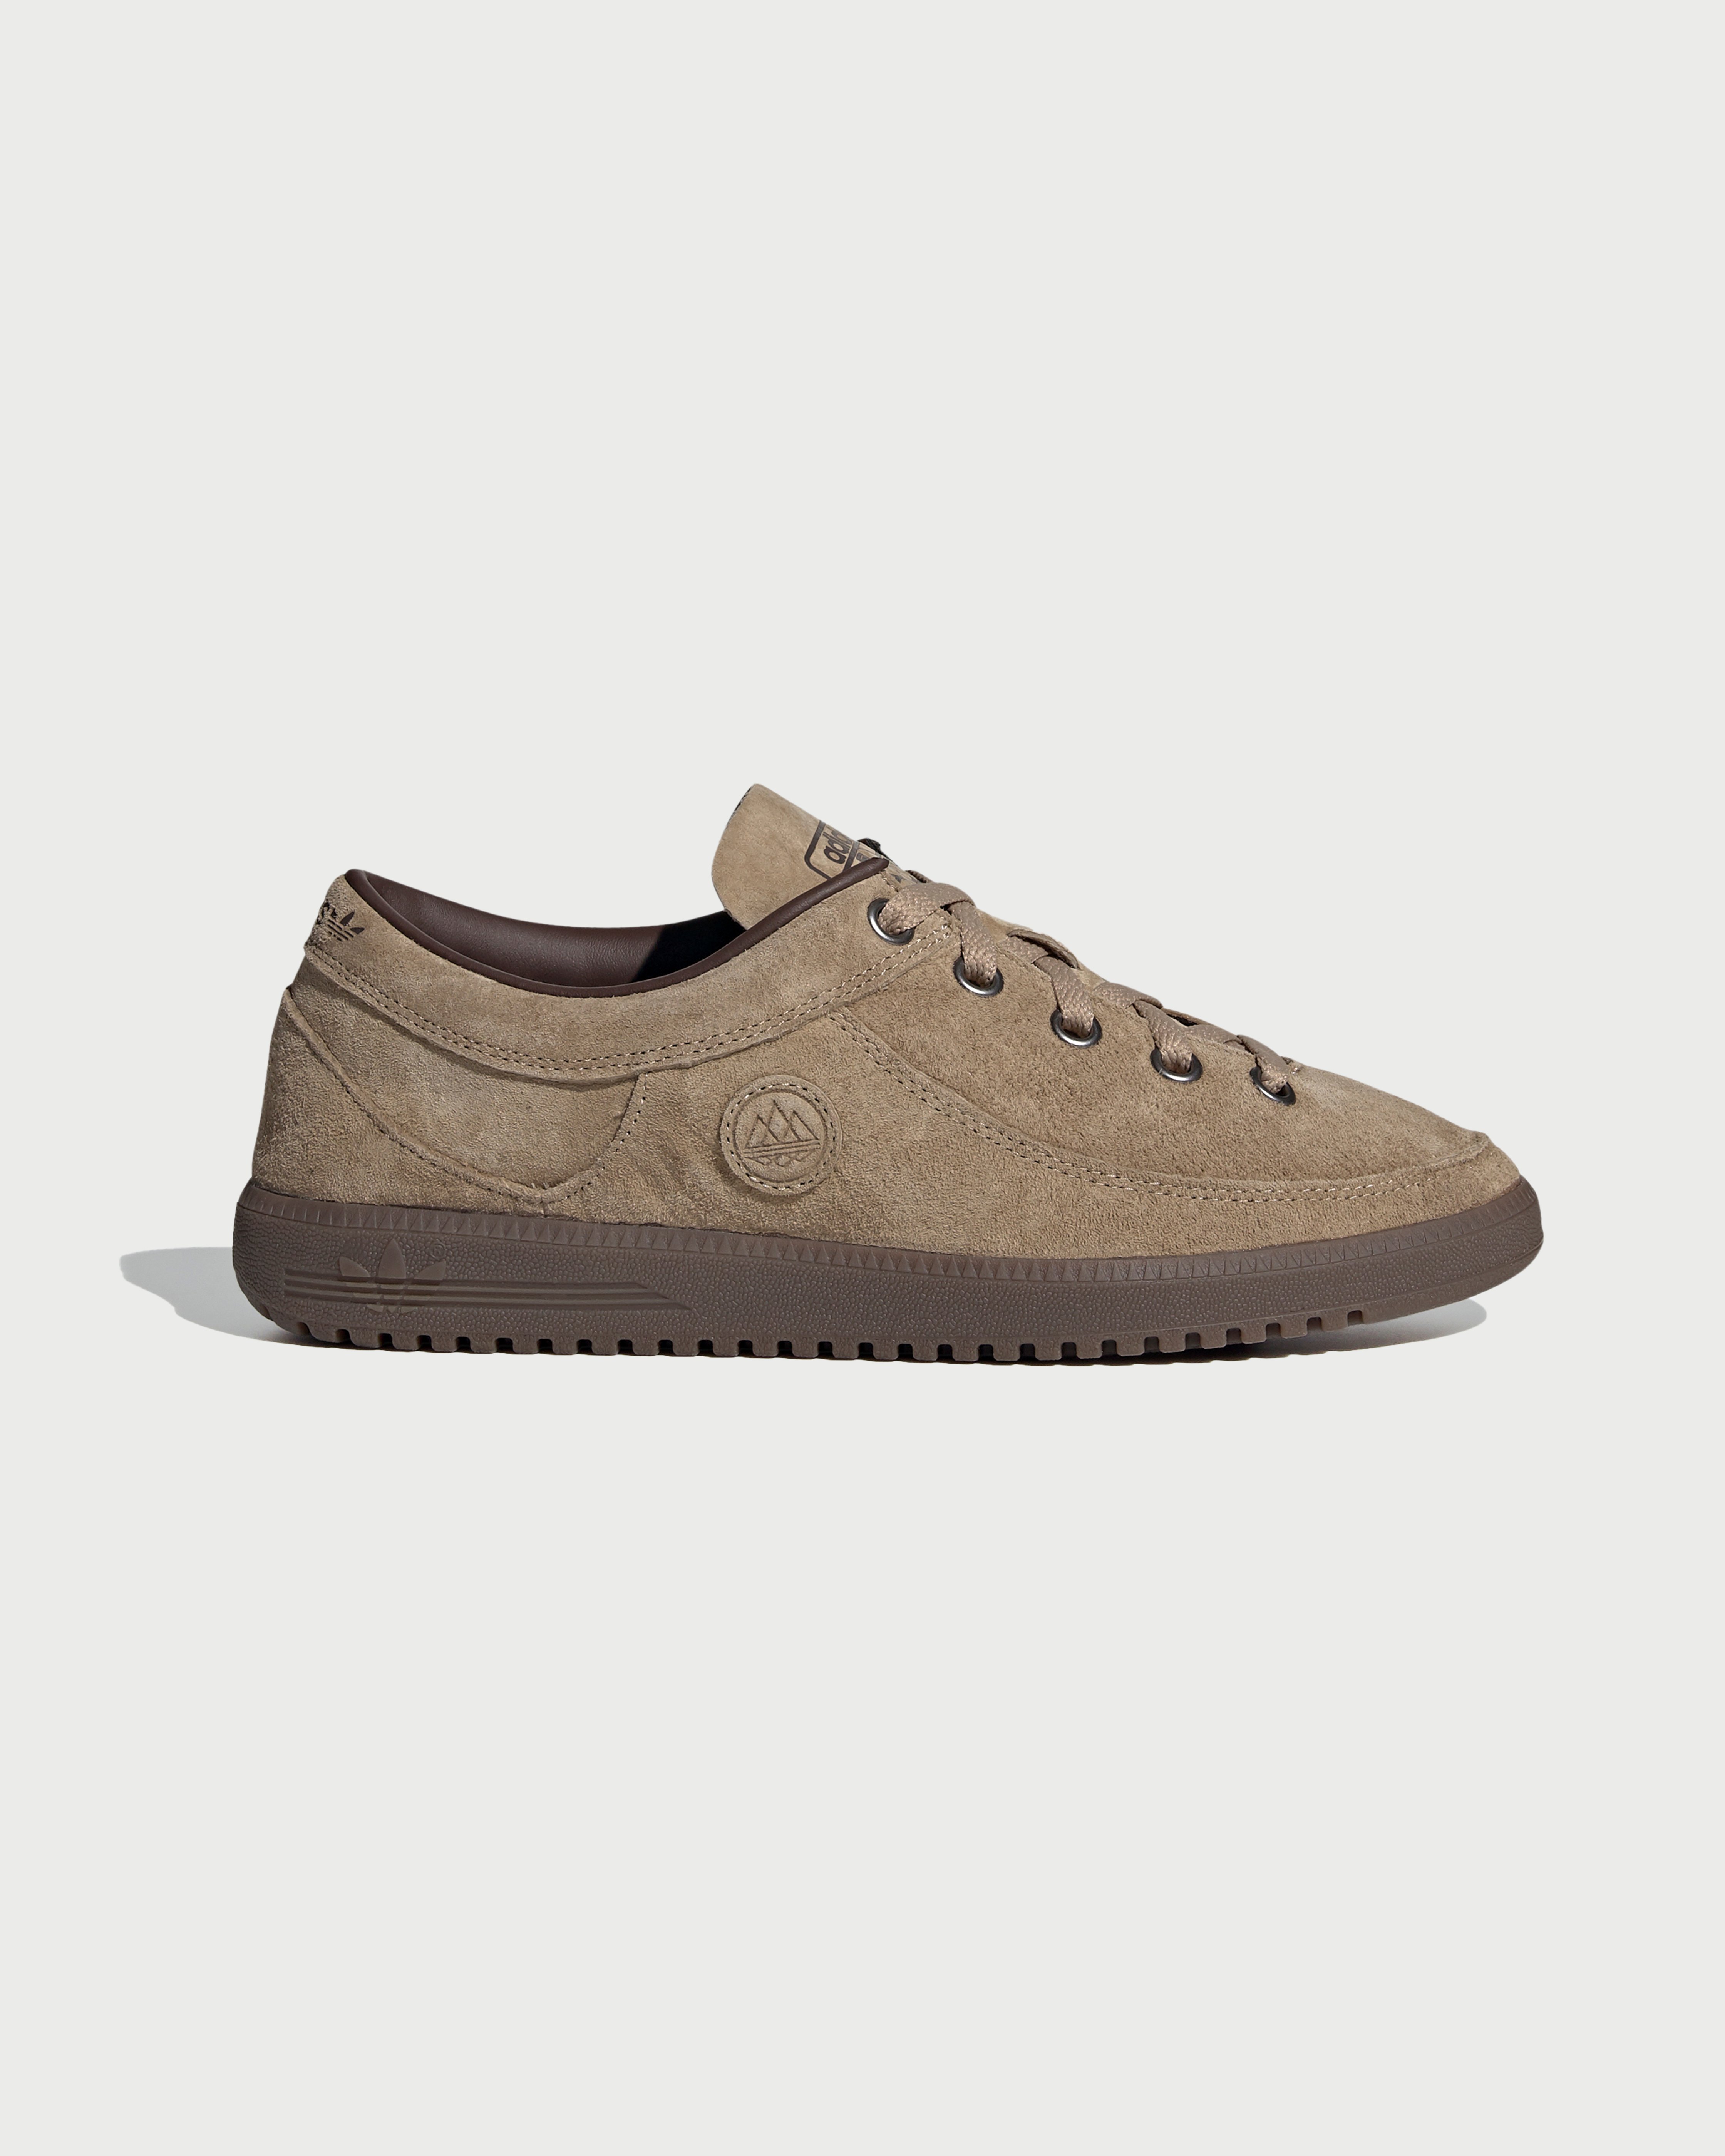 Adidas - Newrad Spezial Brown - Footwear - Brown - Image 1